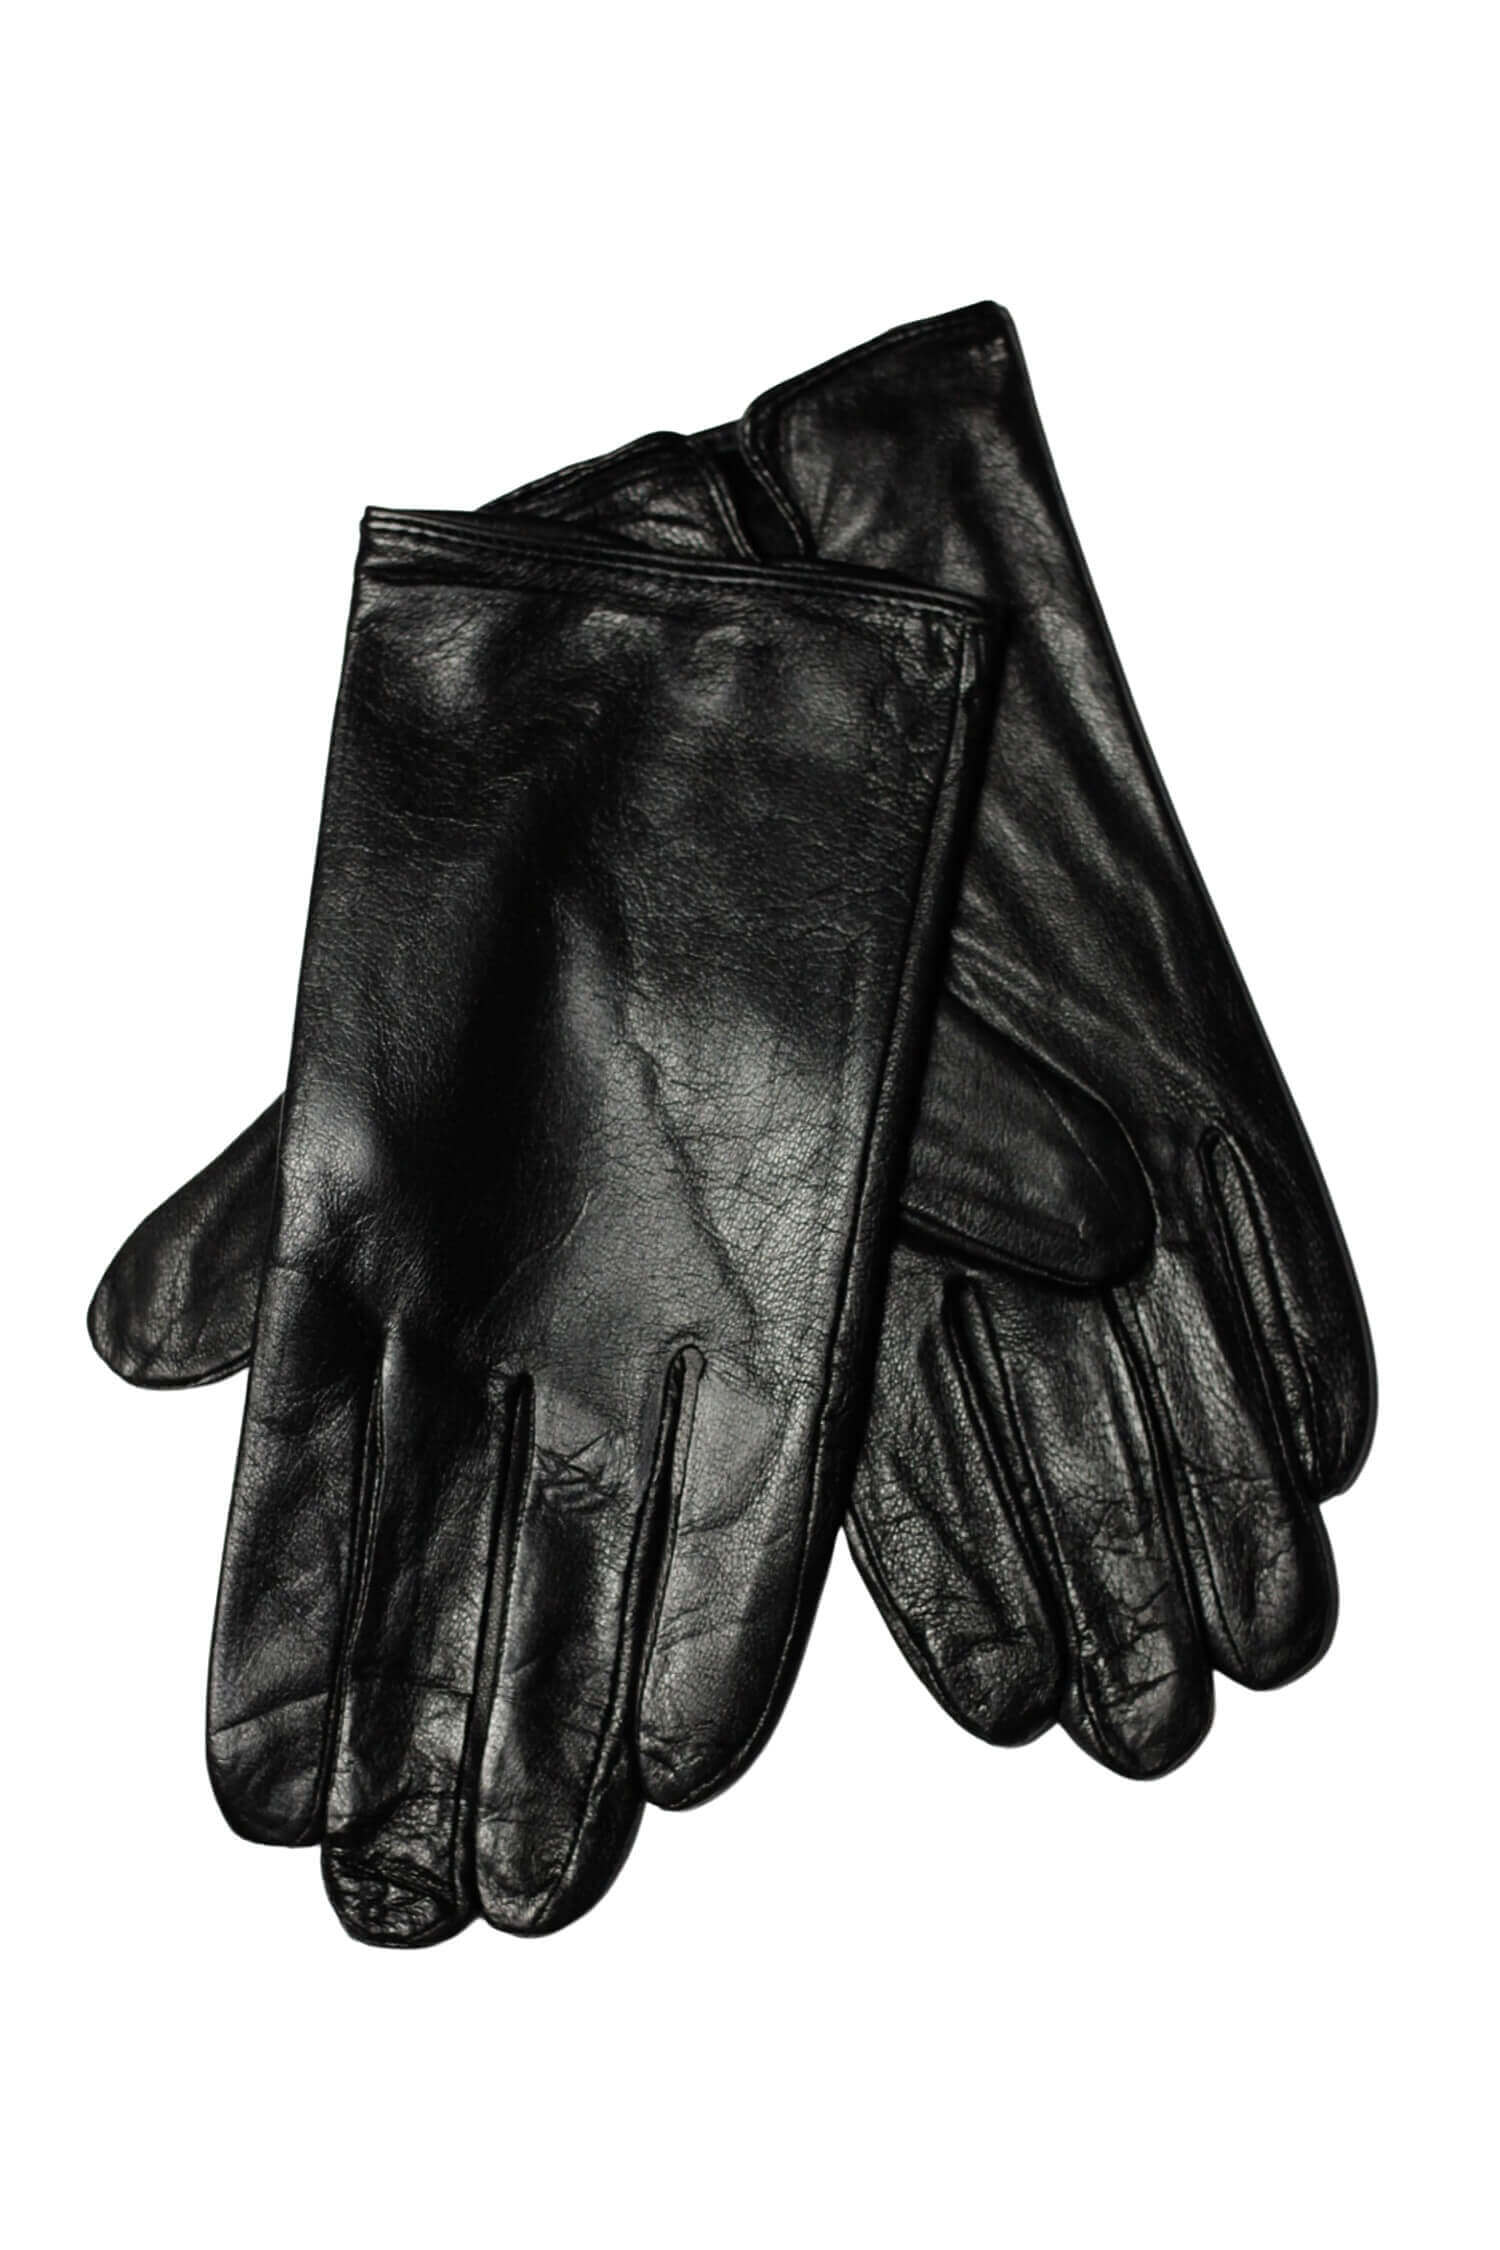 Sandrou elegantní kožené rukavice pánské teplé SZK103 černá